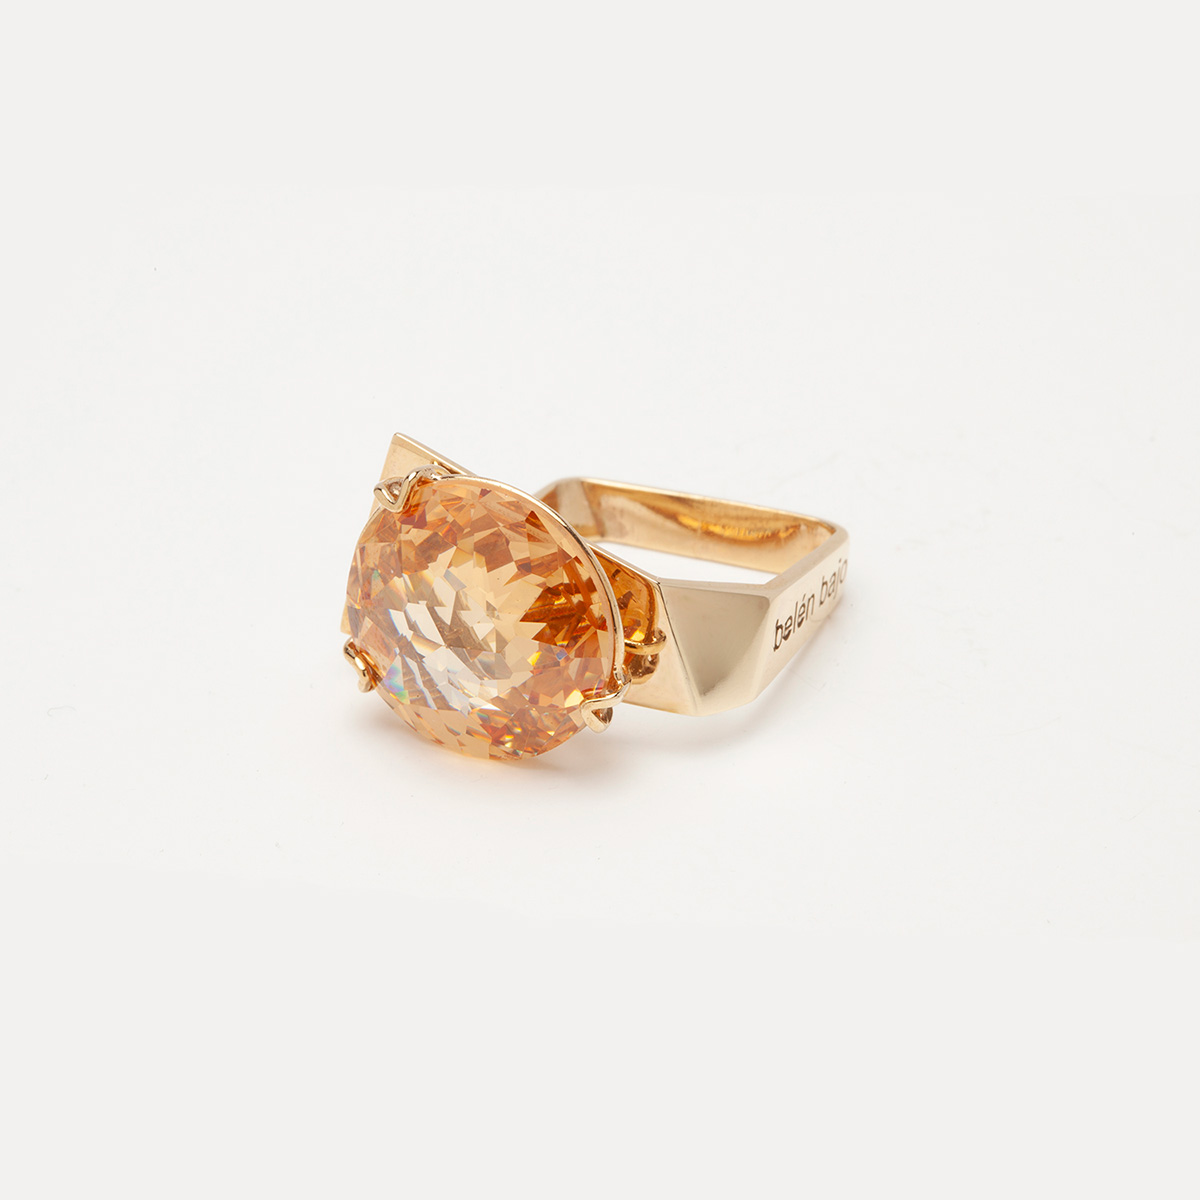 anillo artesanal Ros de oro de 9k o 18k y cuarzo hidrotermal miel 1 diseñado por Belen Bajo